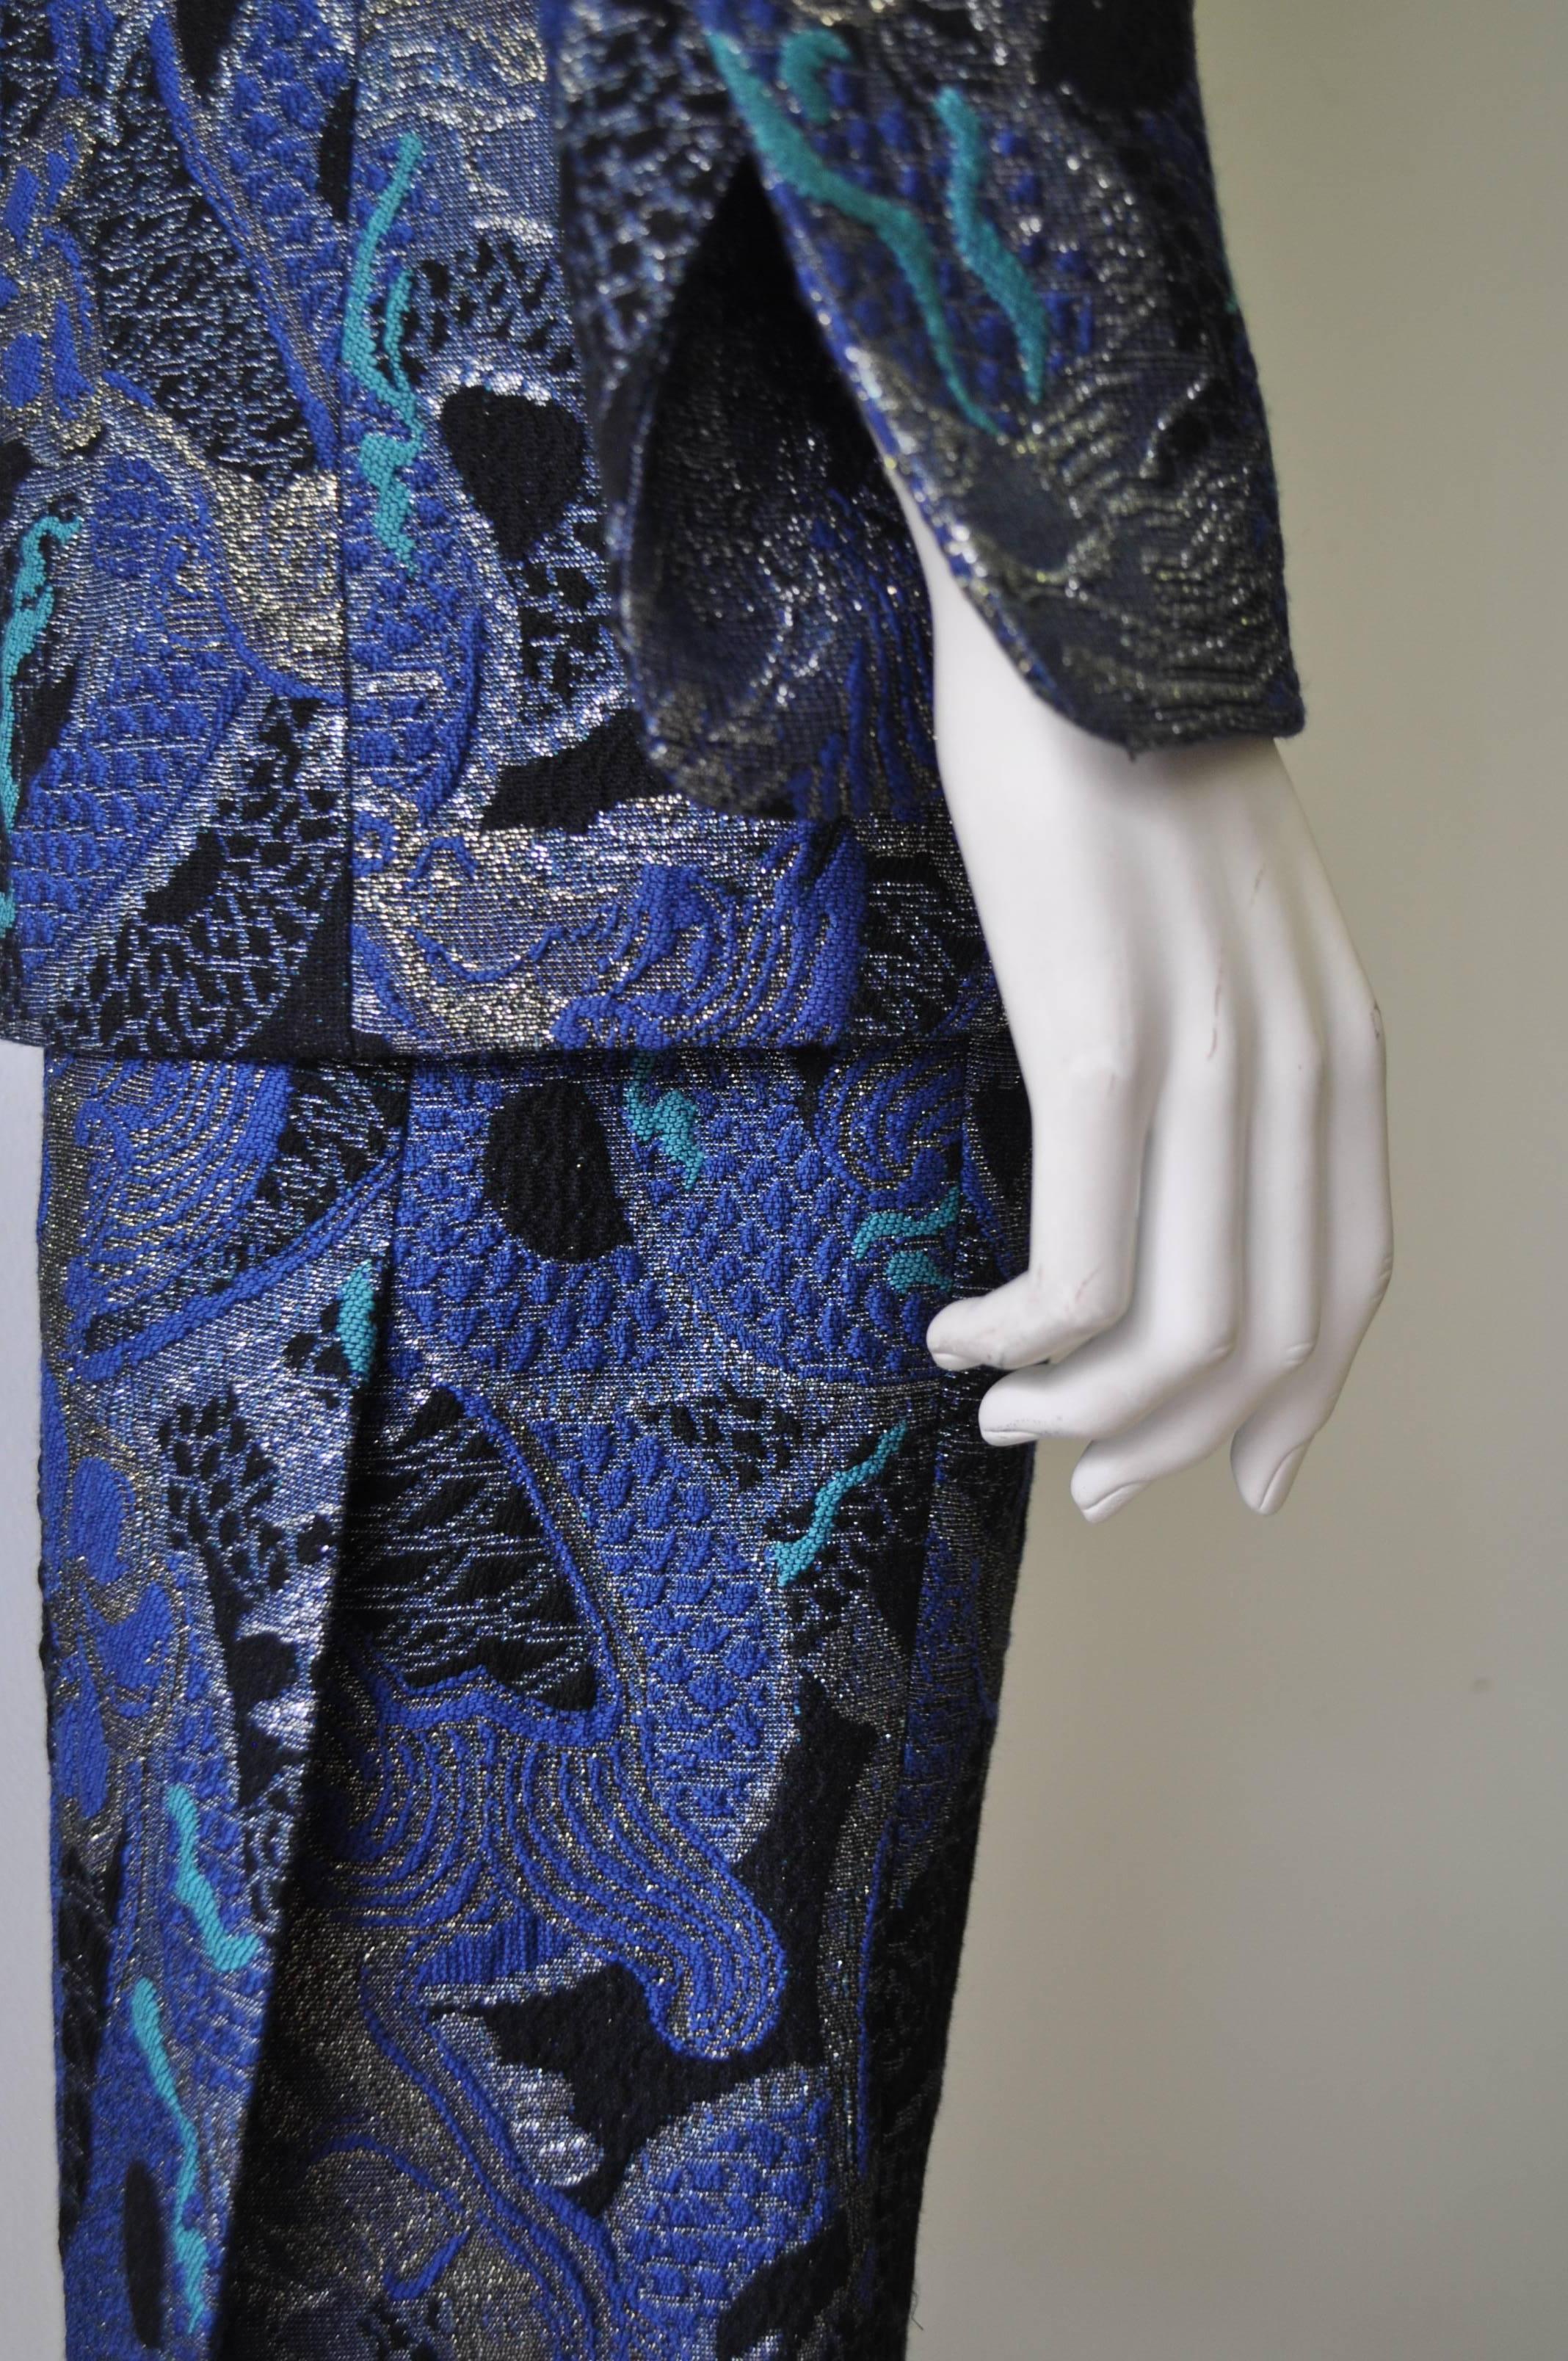 Gianfranco Ferre Plunging Neckline Blue Hue Design Skirt Suit For Sale 1